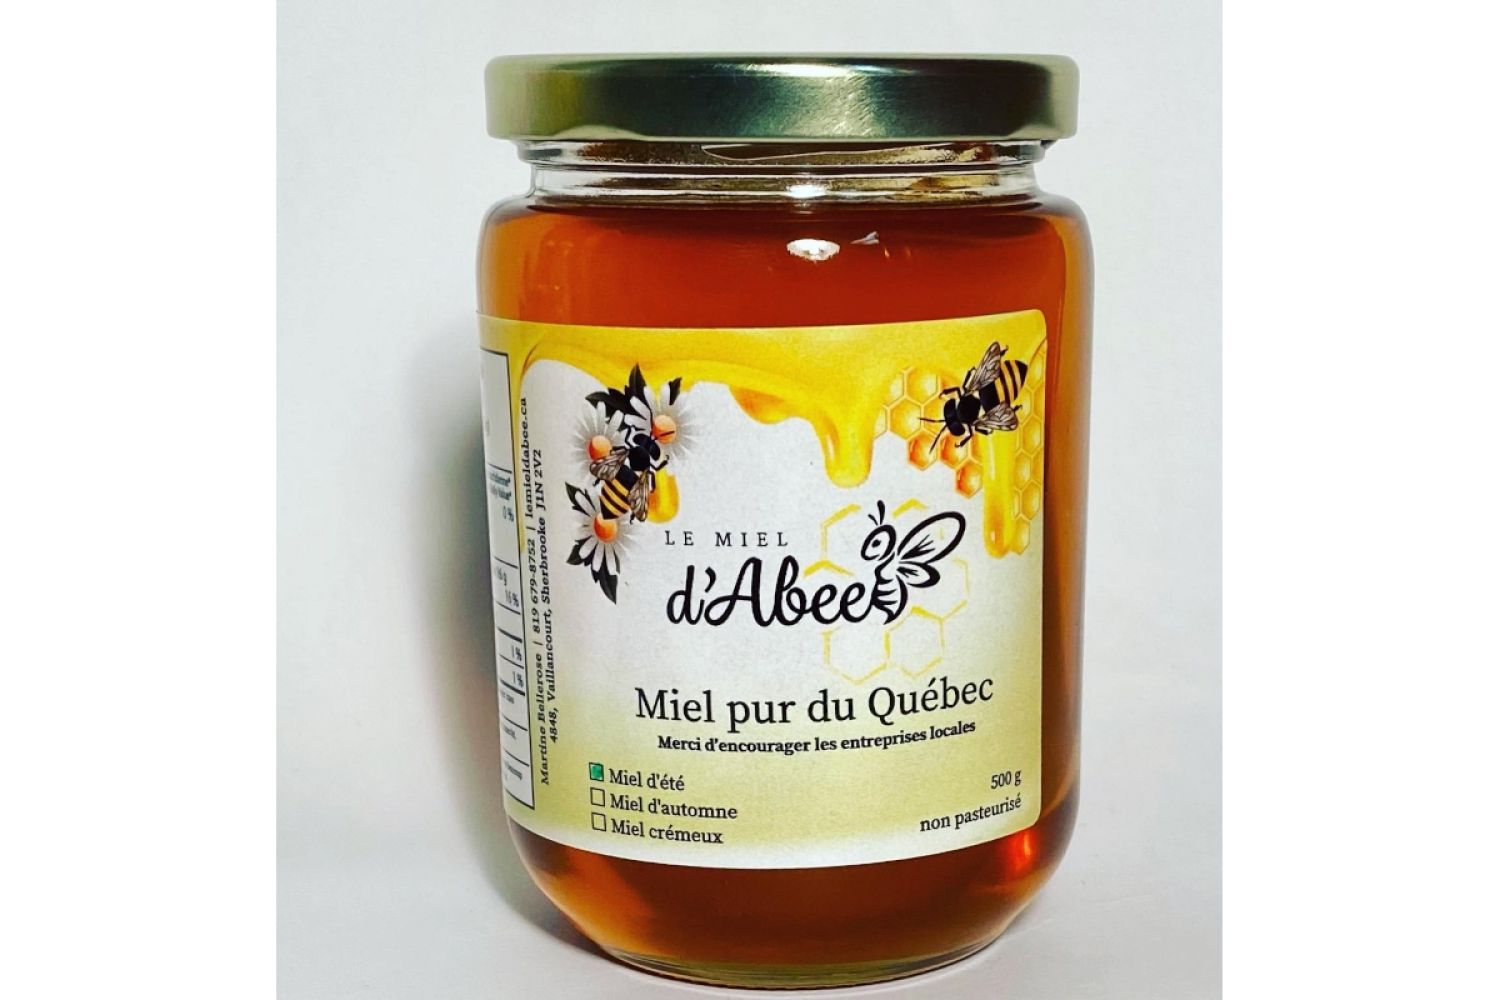 Le miel Abee, miel, confiture, vinaigrette, caramel, pollen, sauce